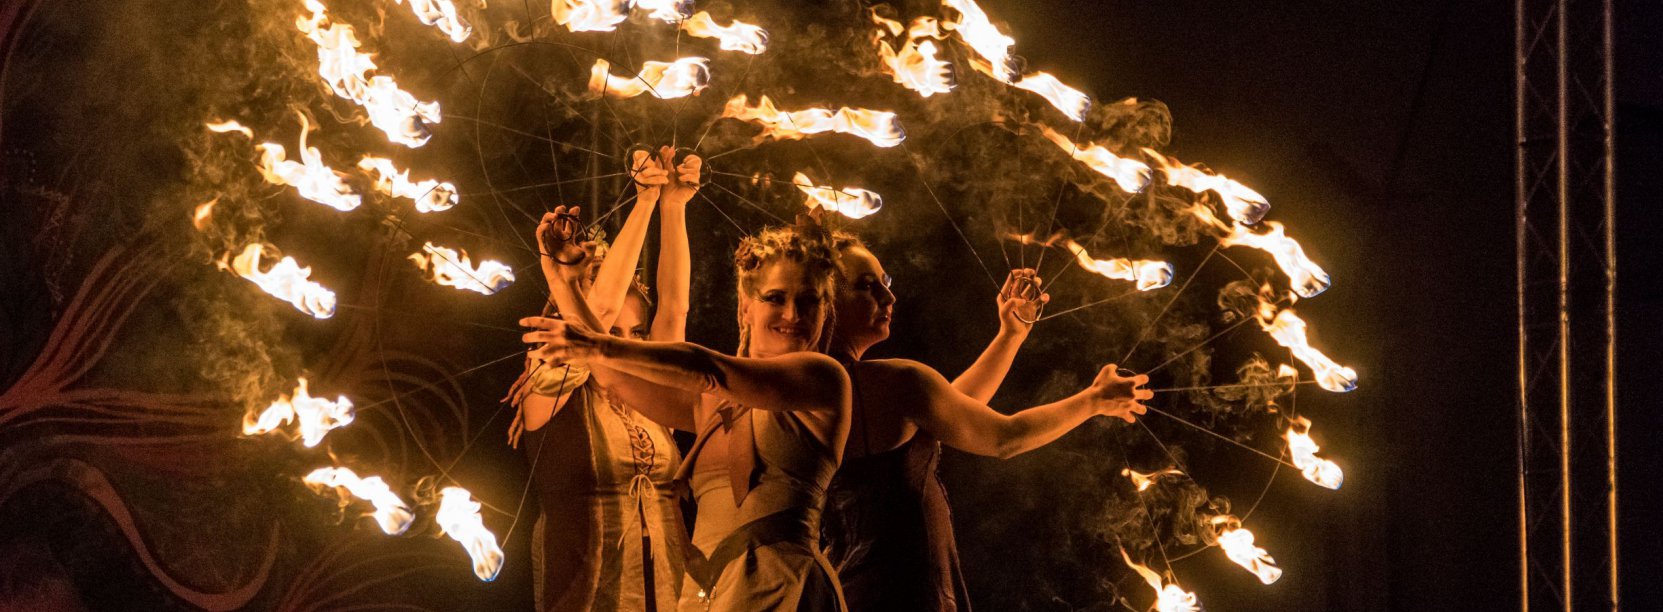 Noc, trzy kobiety tańczące z ogniem